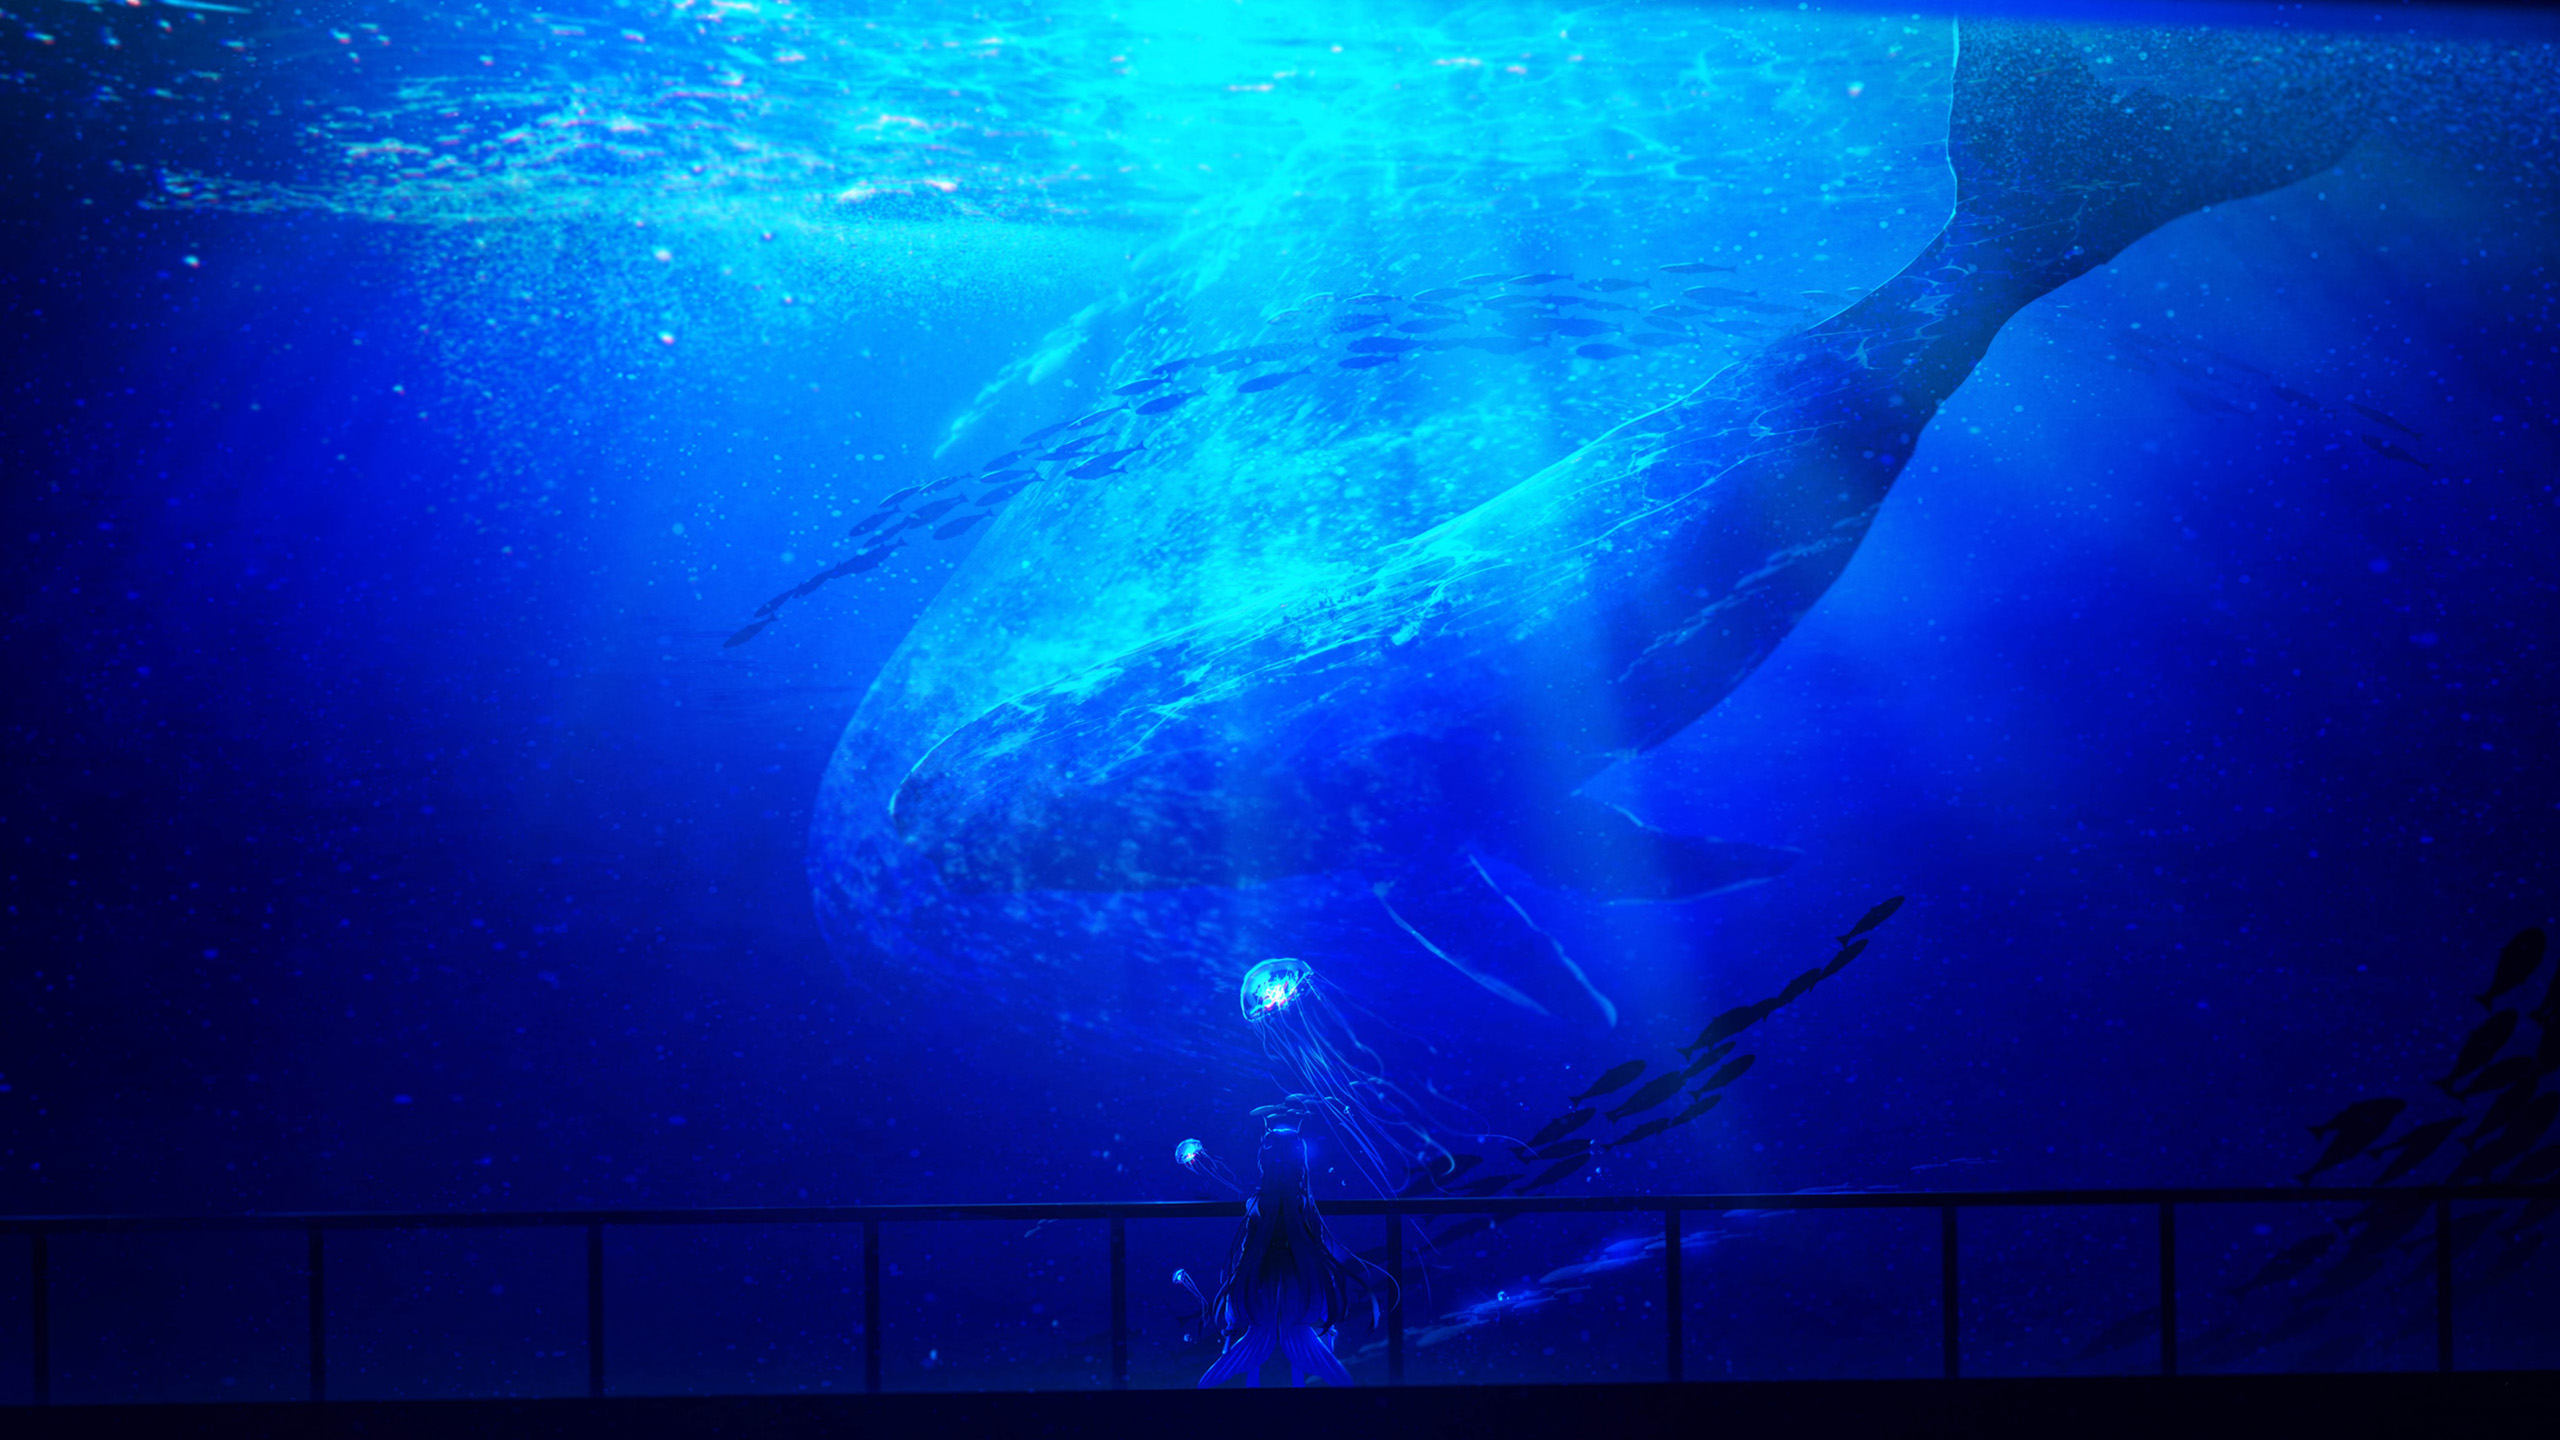 深海图片 鲸鱼壁纸下载 阳光高清大图 神秘高清图片壁纸 我爱图片网